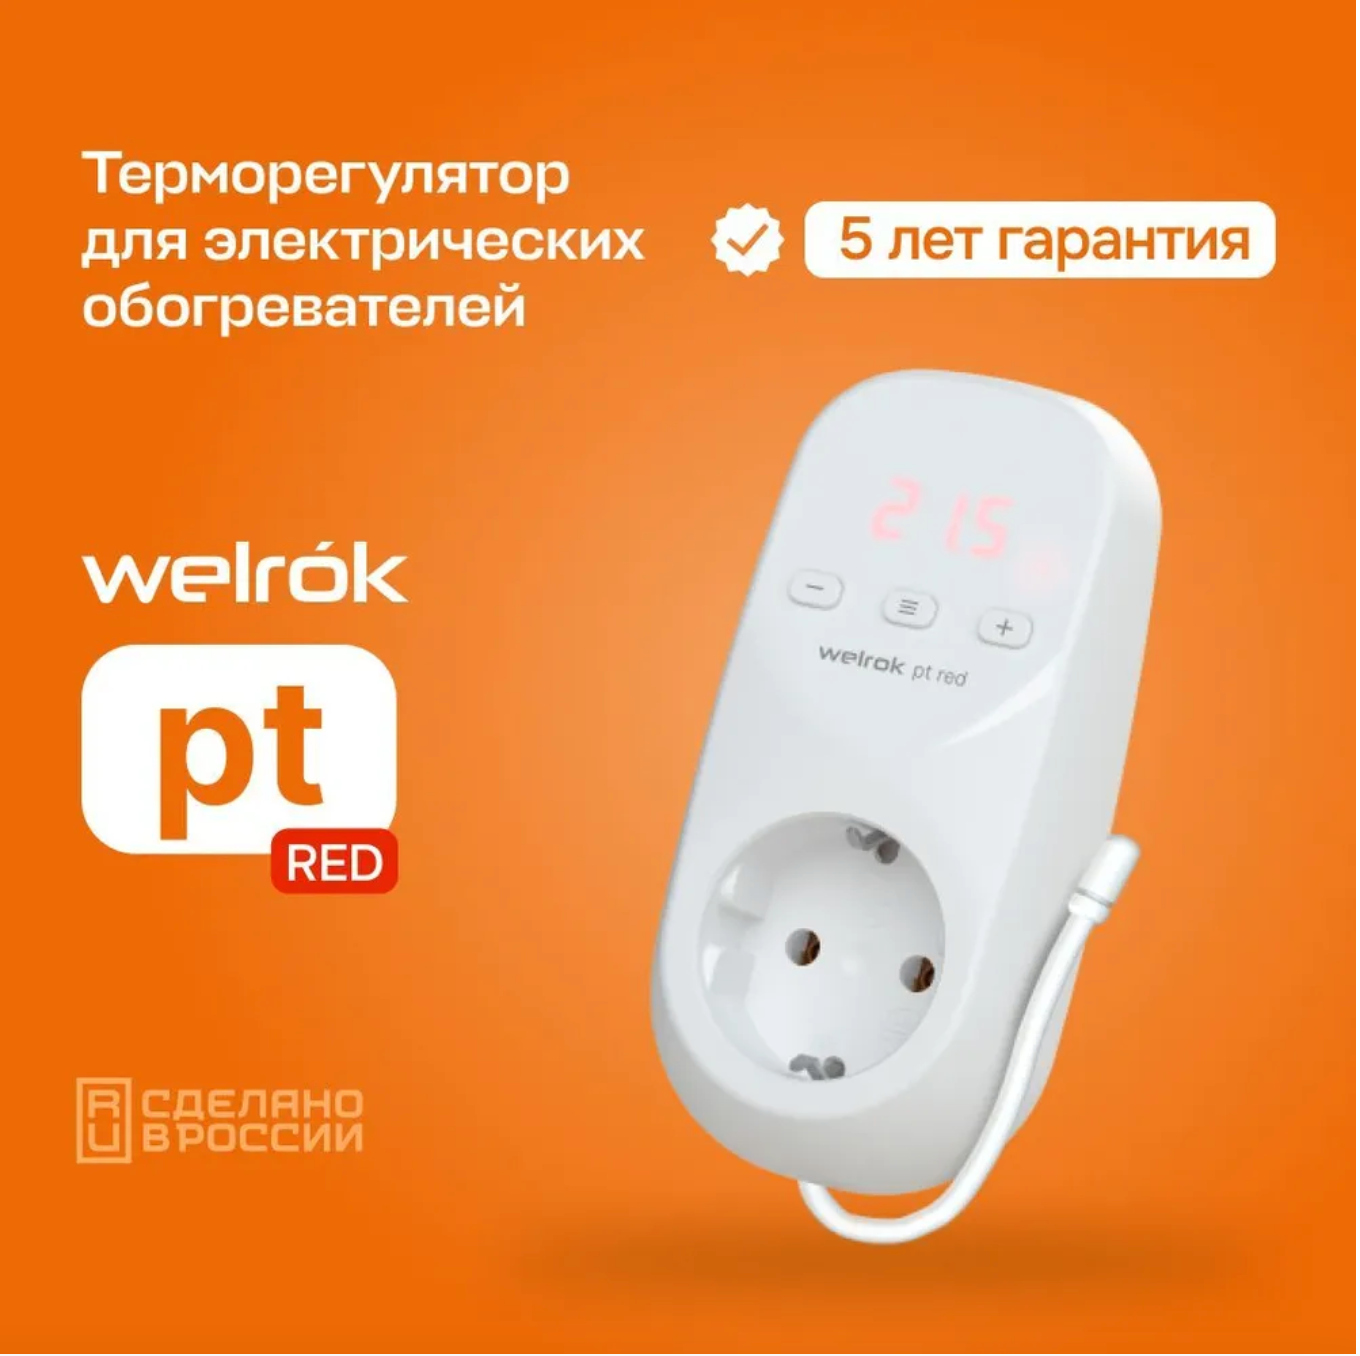 Терморегулятор для обогревателя Welrok PT red, розеточный универсальный